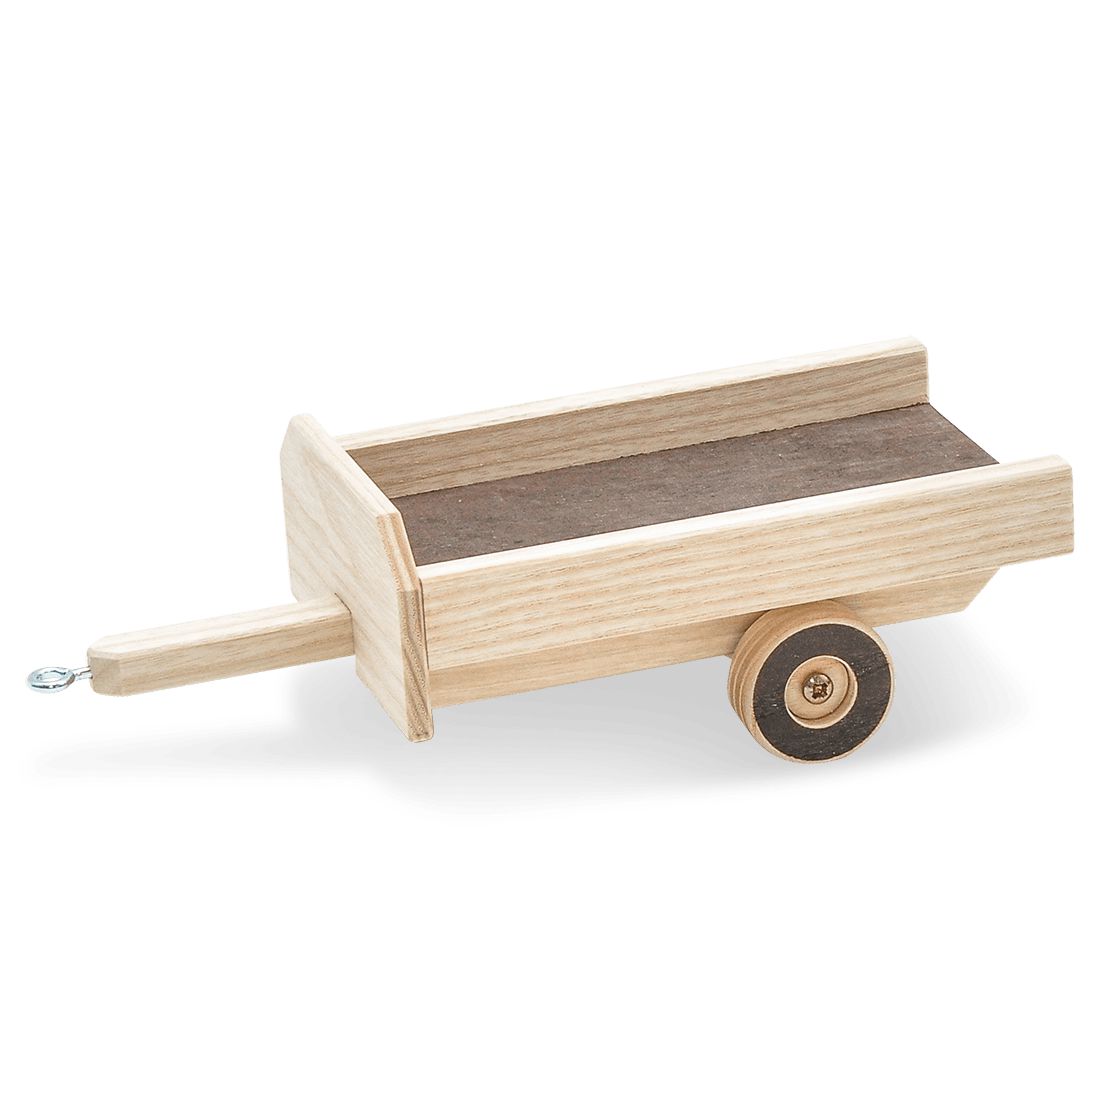 Atelier Passage Anhänger 1-Achs klein aus Holz - swiss made